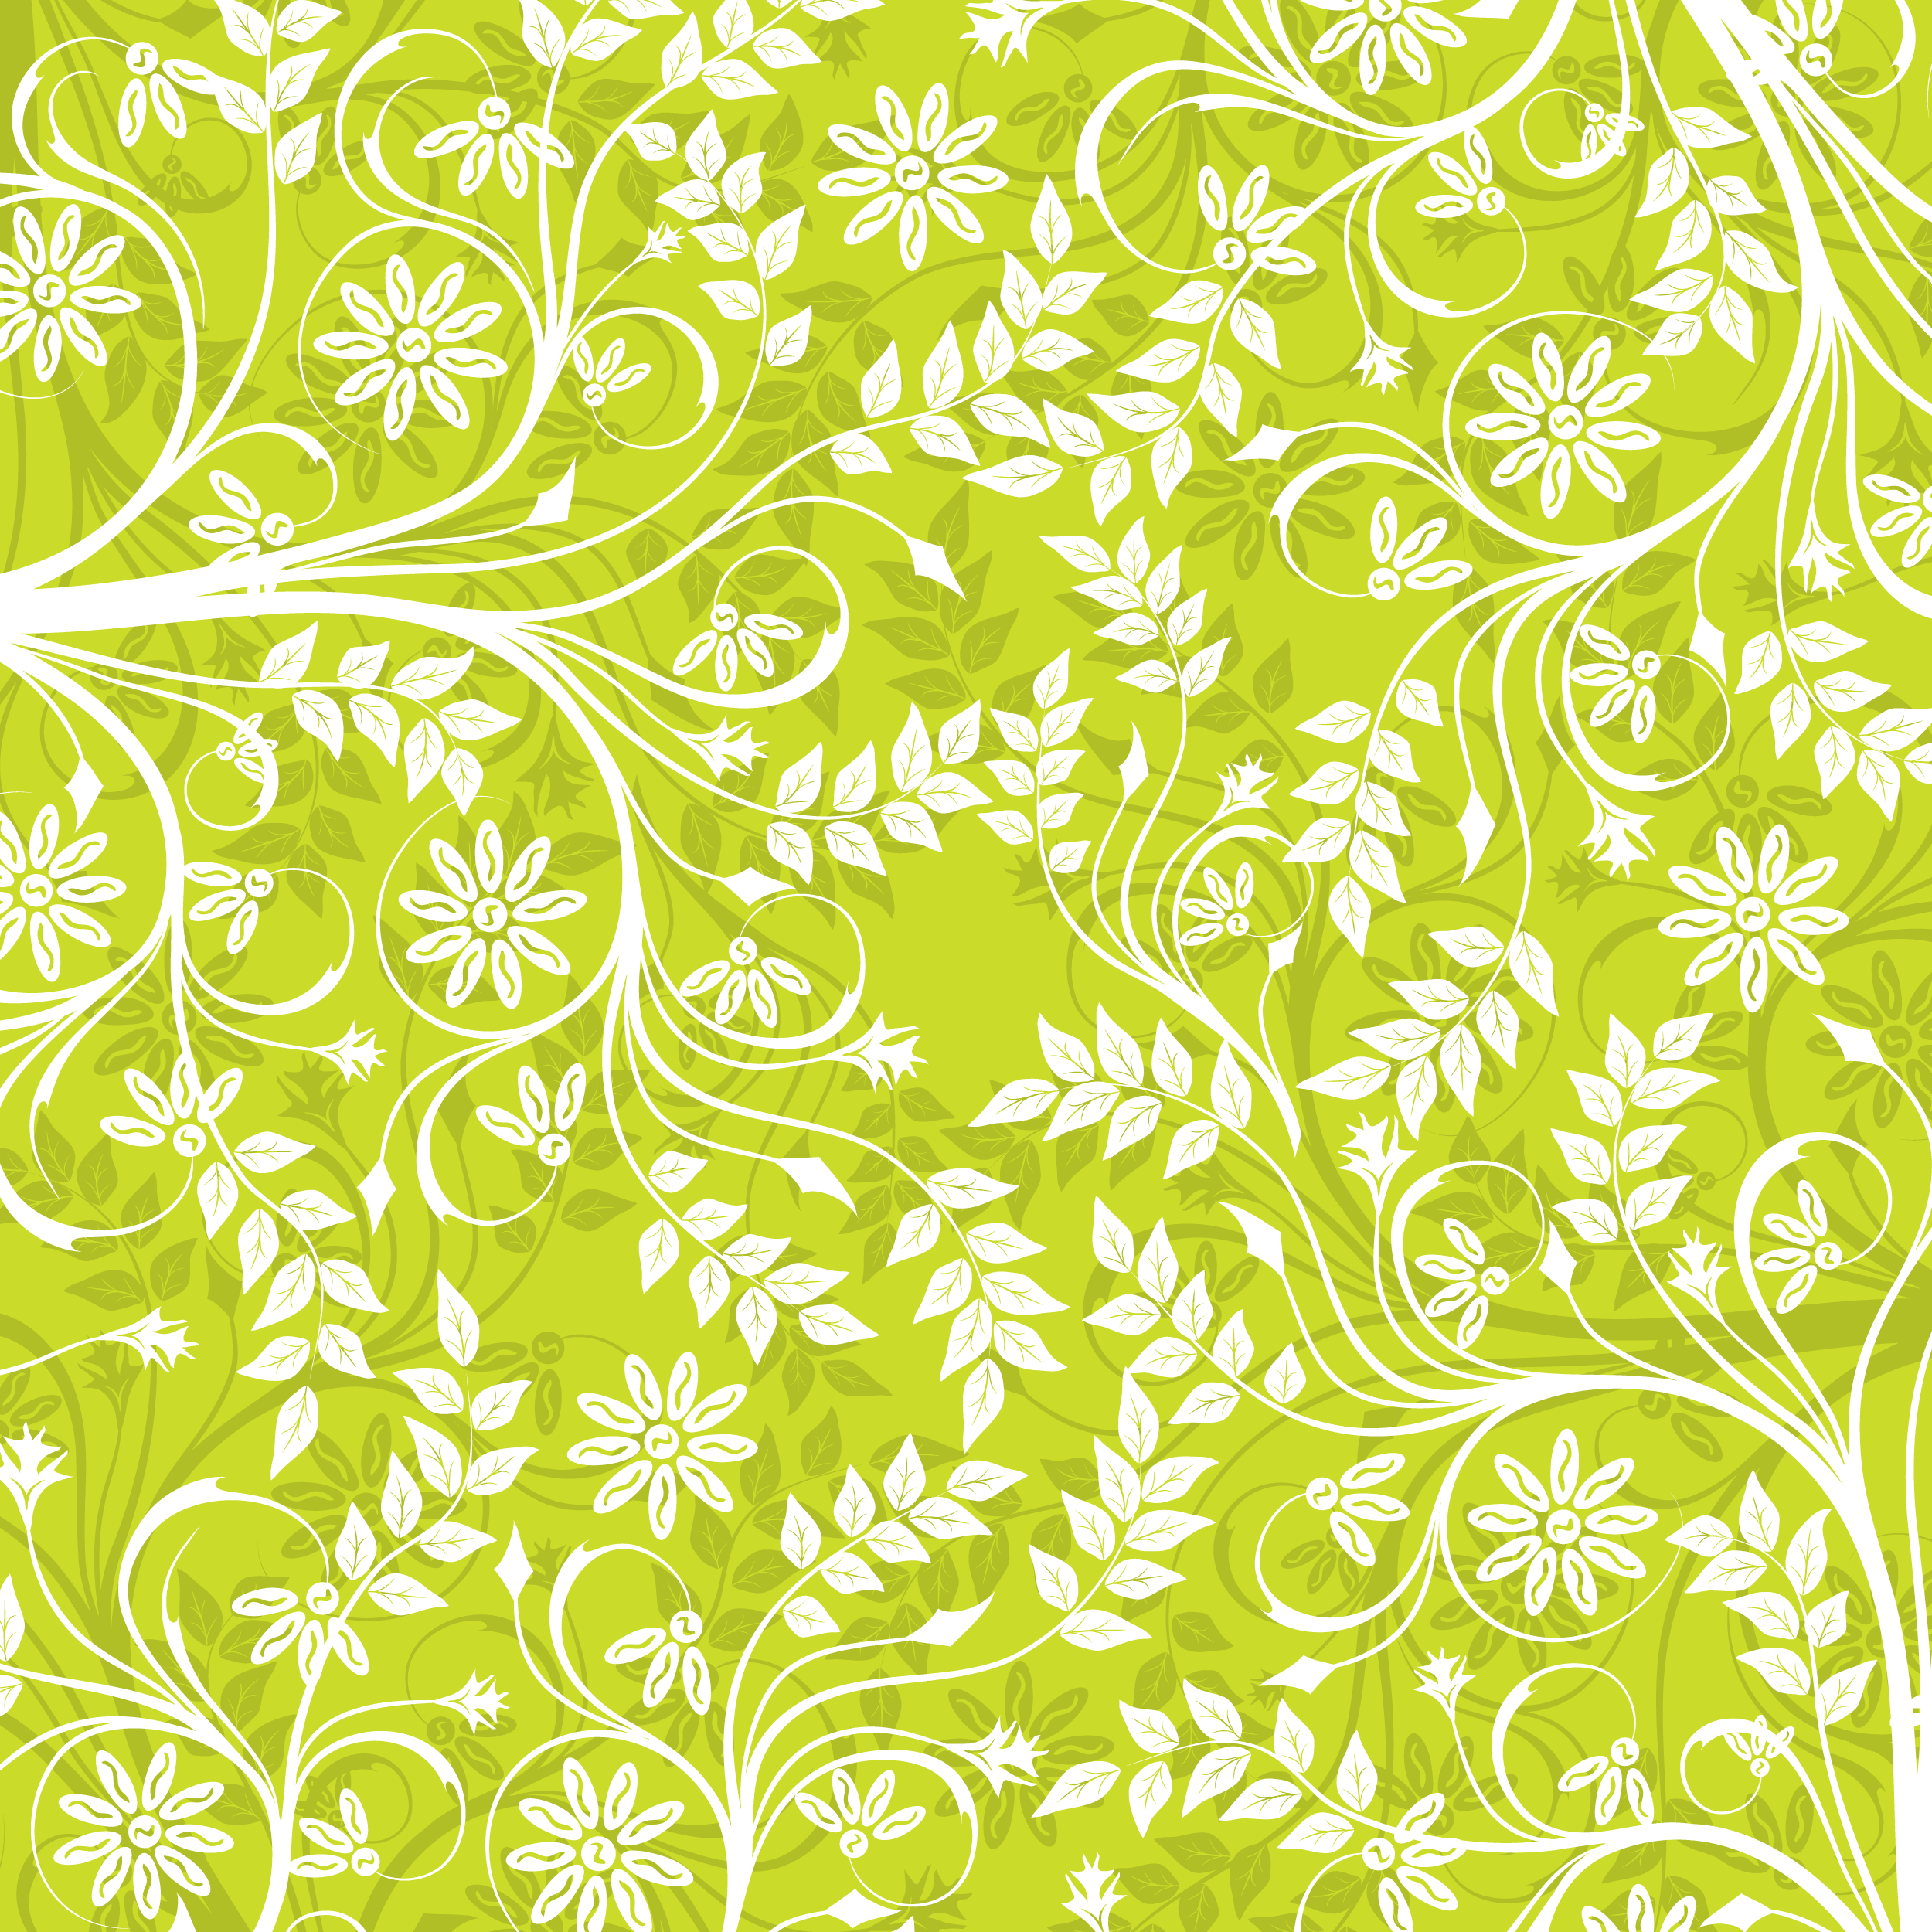 壁紙 背景イラスト 花の模様 柄 パターン No 040 白と緑 茎葉 曲線